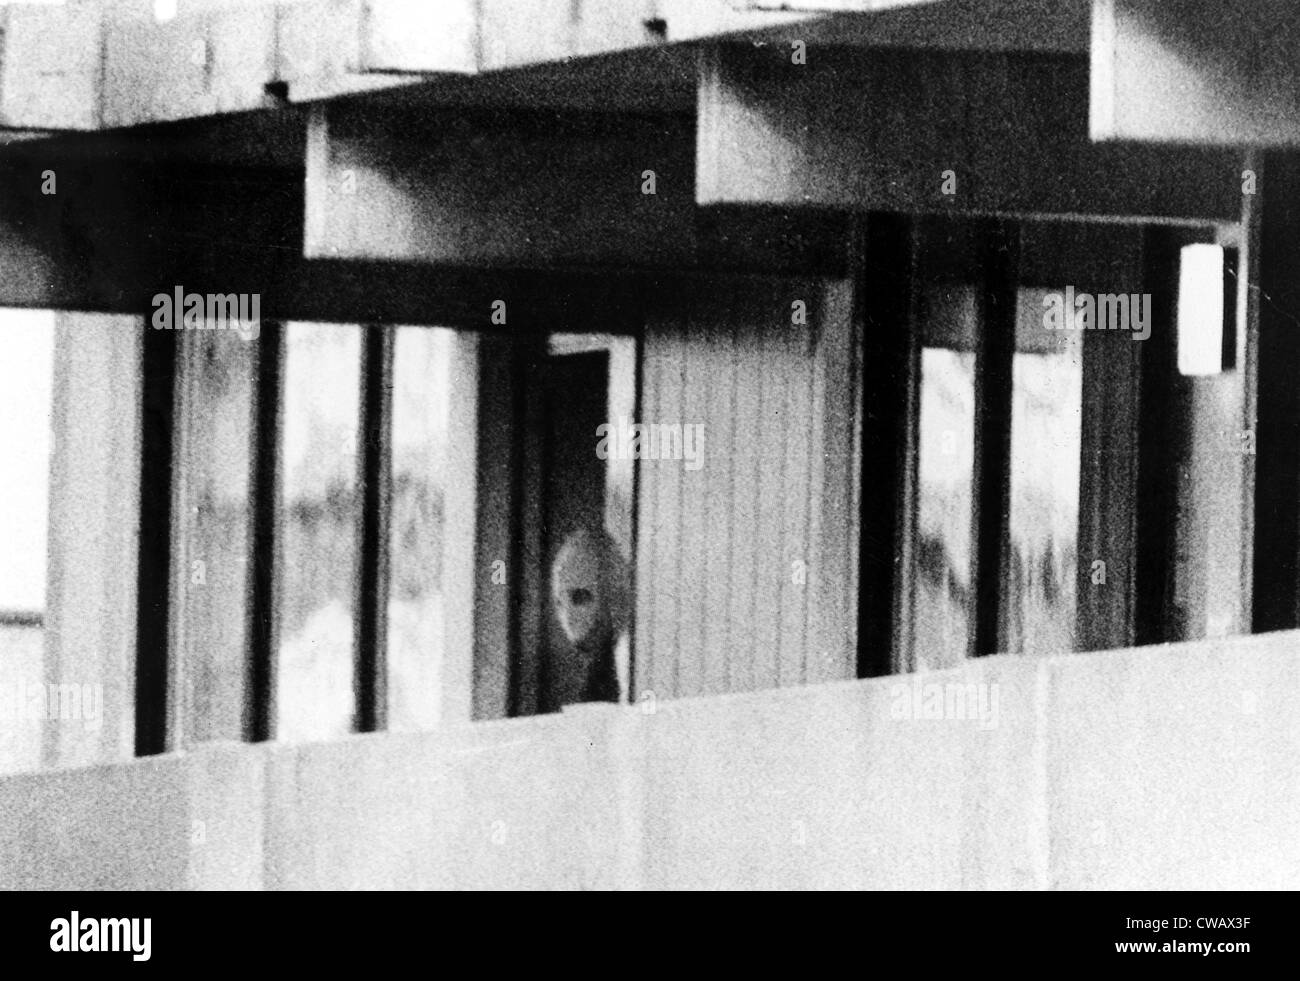 Olympiade 1972, späht Terrorist aus "Schwarzer September" aus Wohnung im Olympiadorf, München, Deutschland. 05.09.1972... Stockfoto